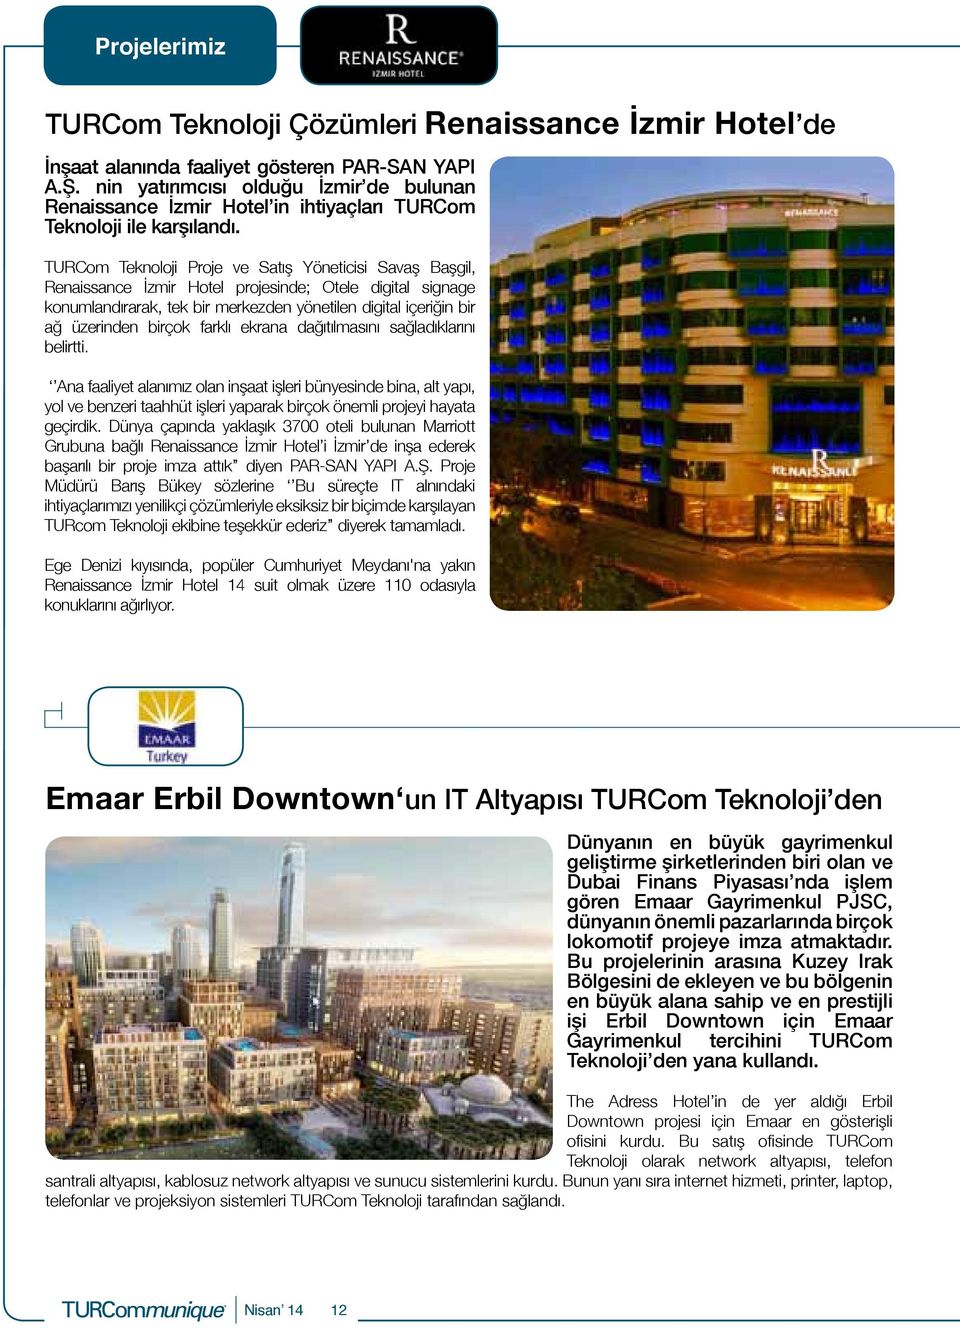 TURCom Teknoloji Proje ve Satış Yöneticisi Savaş Başgil, Renaissance İzmir Hotel projesinde; Otele digital signage konumlandırarak, tek bir merkezden yönetilen digital içeriğin bir ağ üzerinden